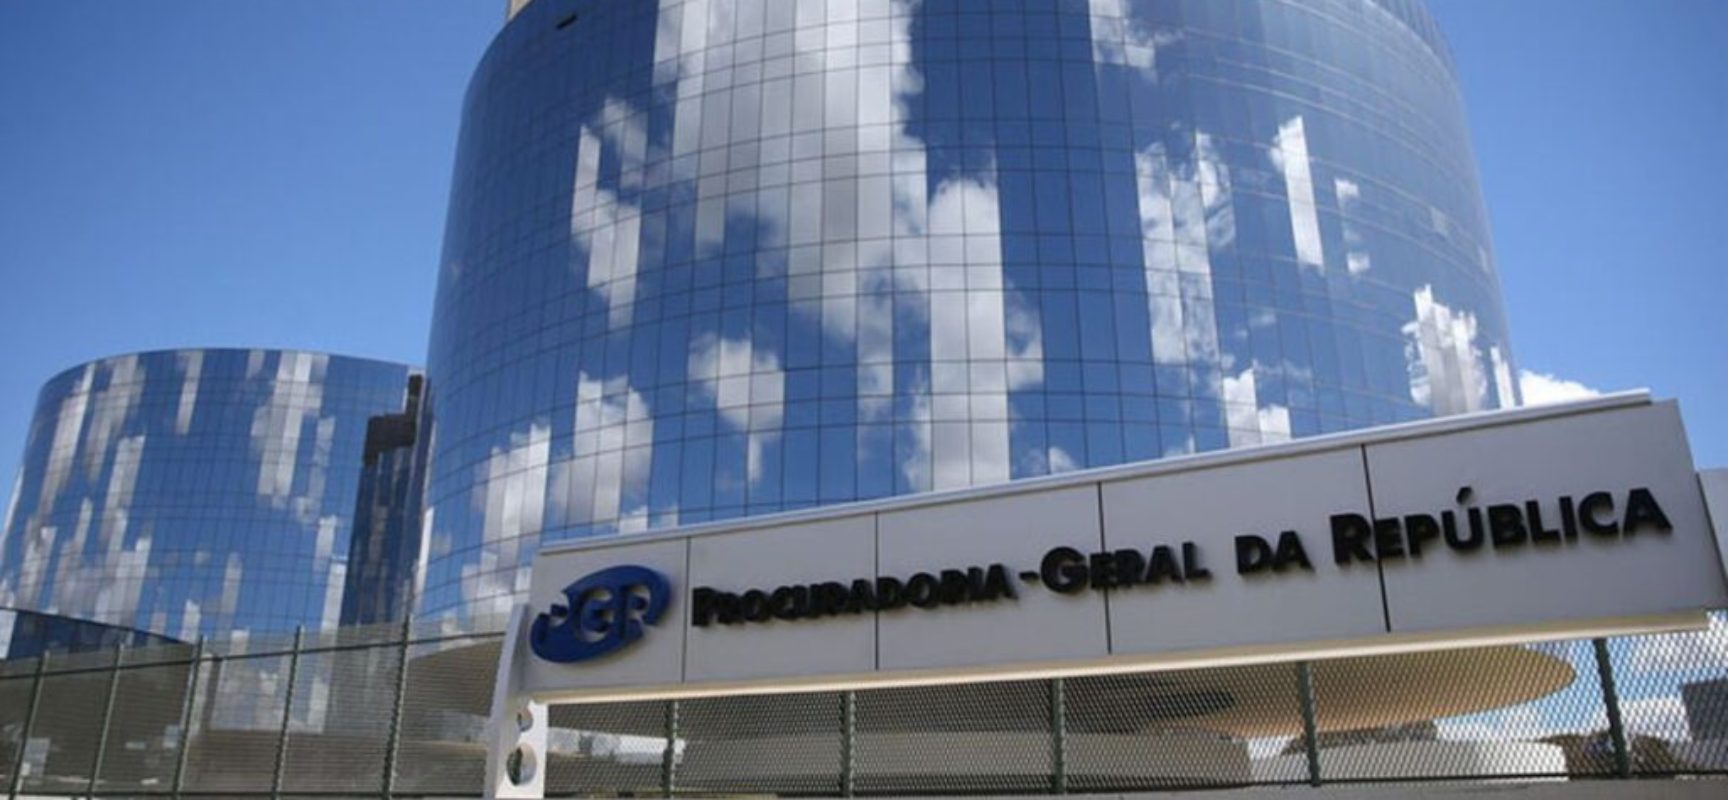 PGR entra com ações para barrar reeleições em assembleias legislativas